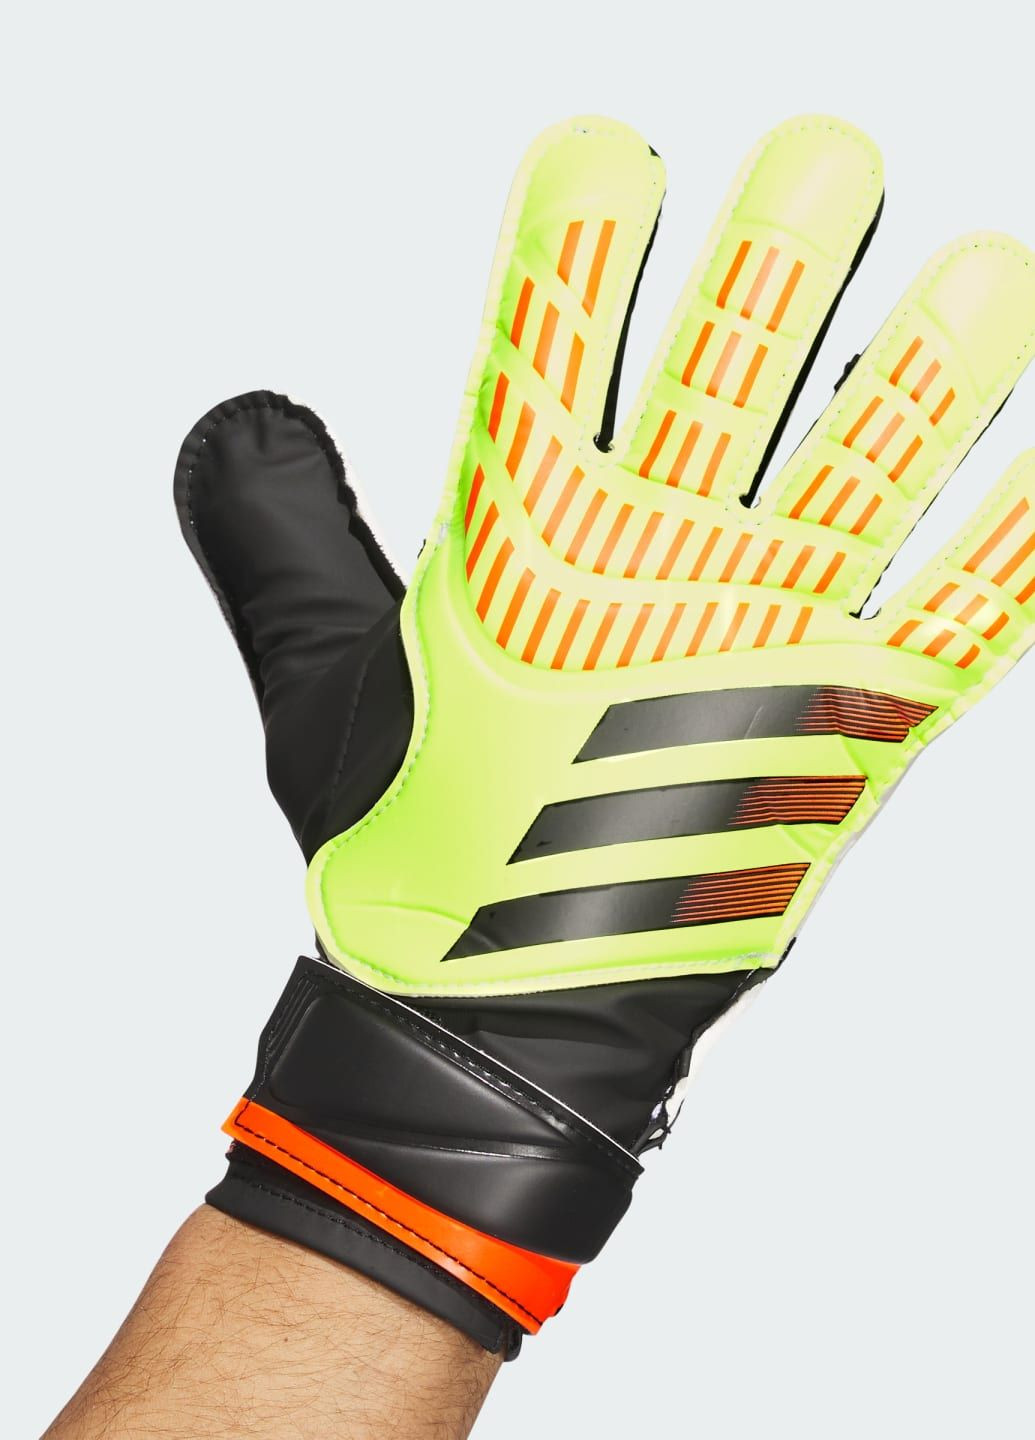 Вратарские перчатки Predator Training adidas (288050025)